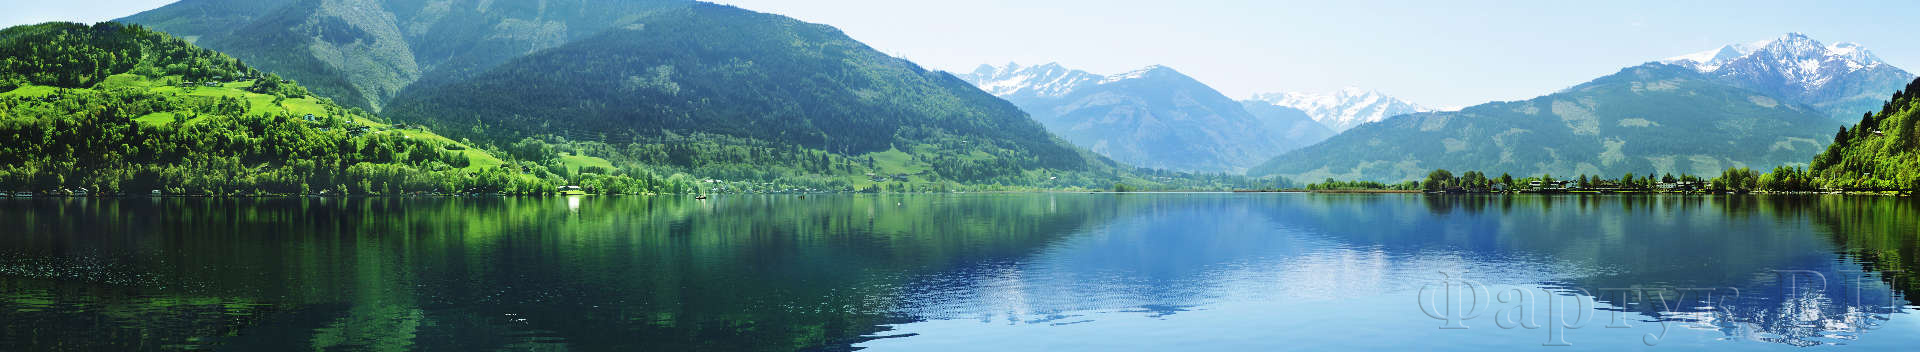 Озеро Целль в Целль-ам-Зее, Австрия